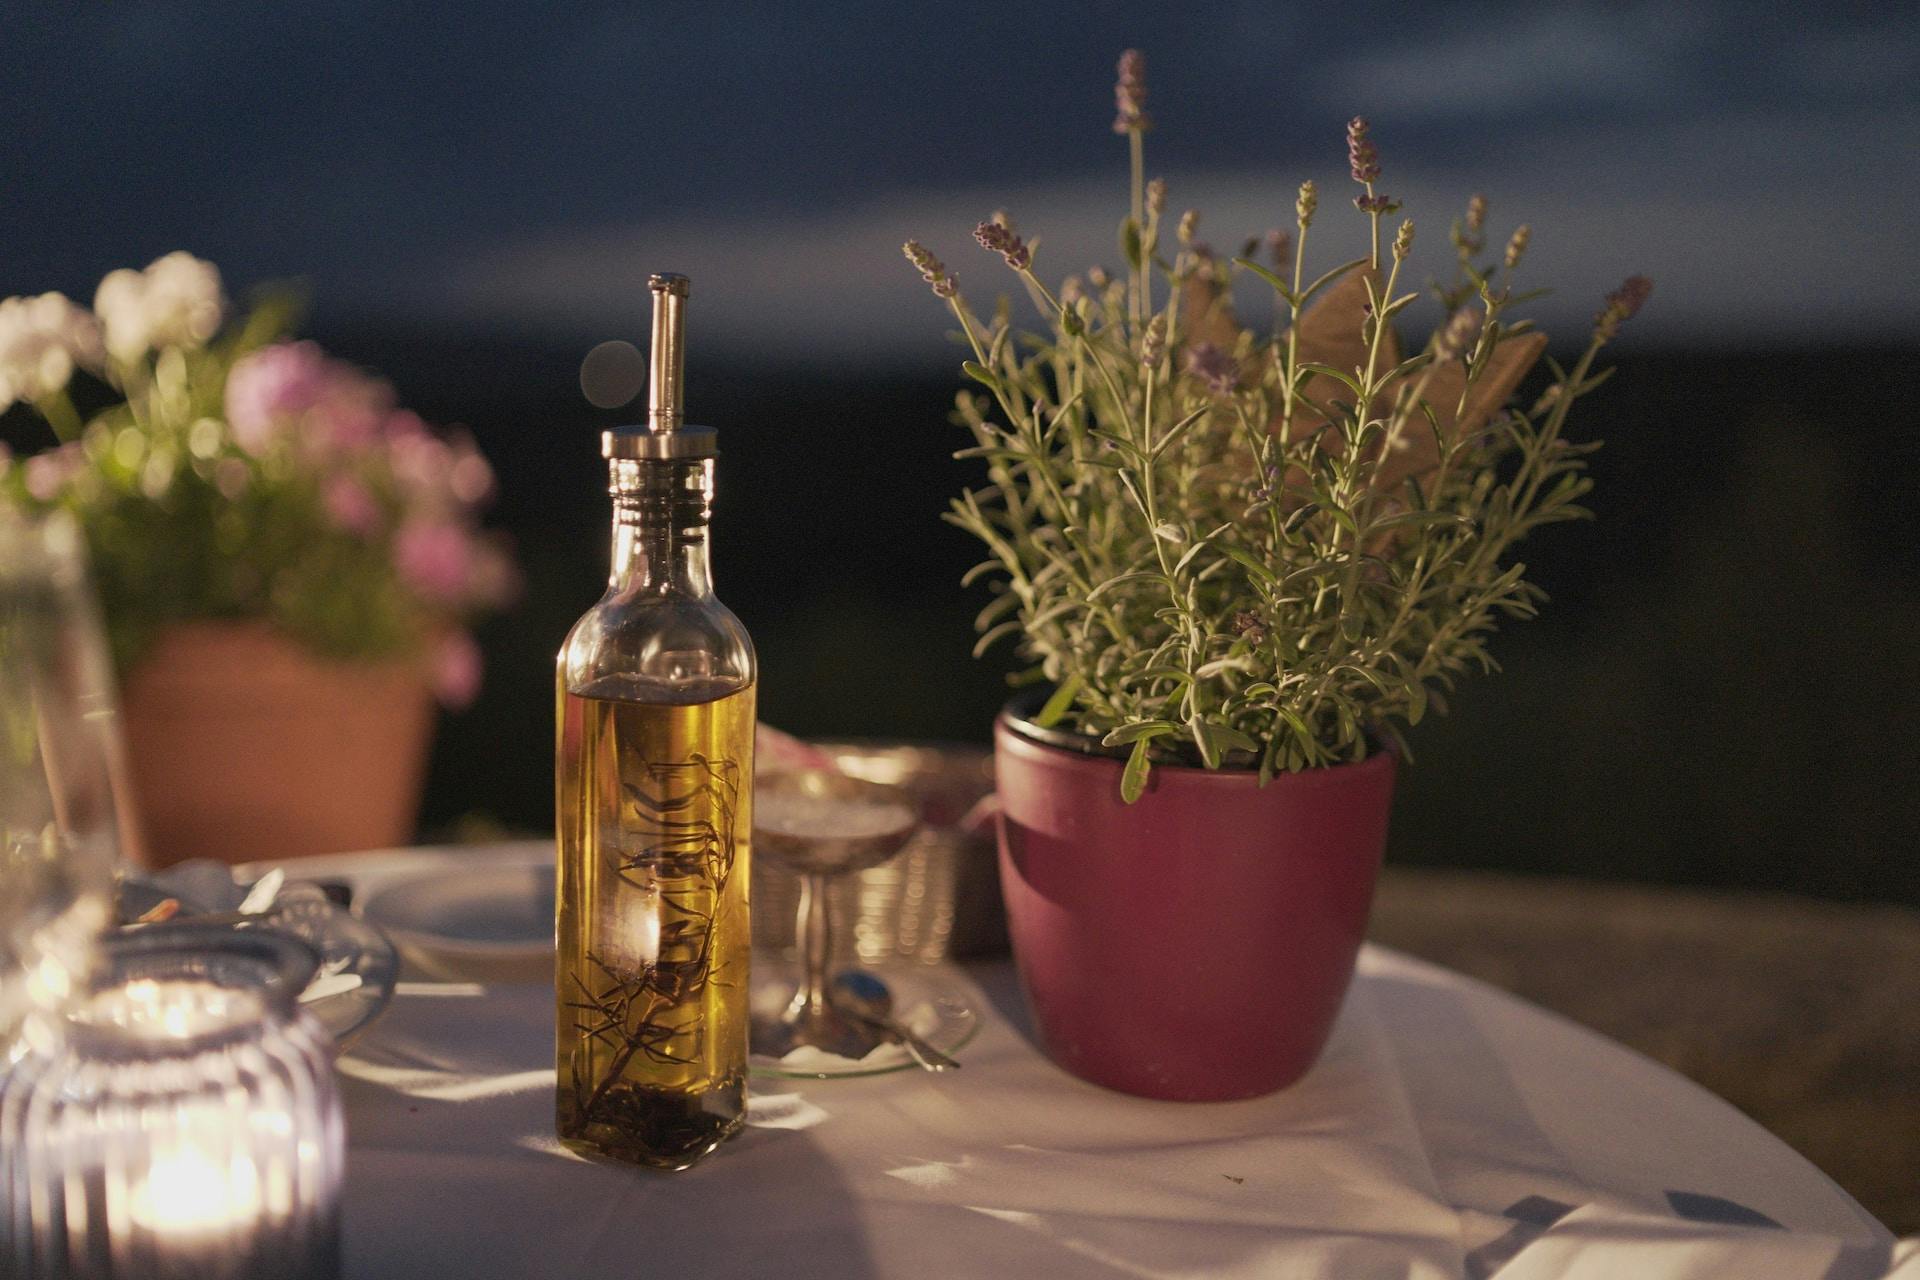 Flasche mit Öliger Flüssigkeit auf Tisch mit Pflanze daneben